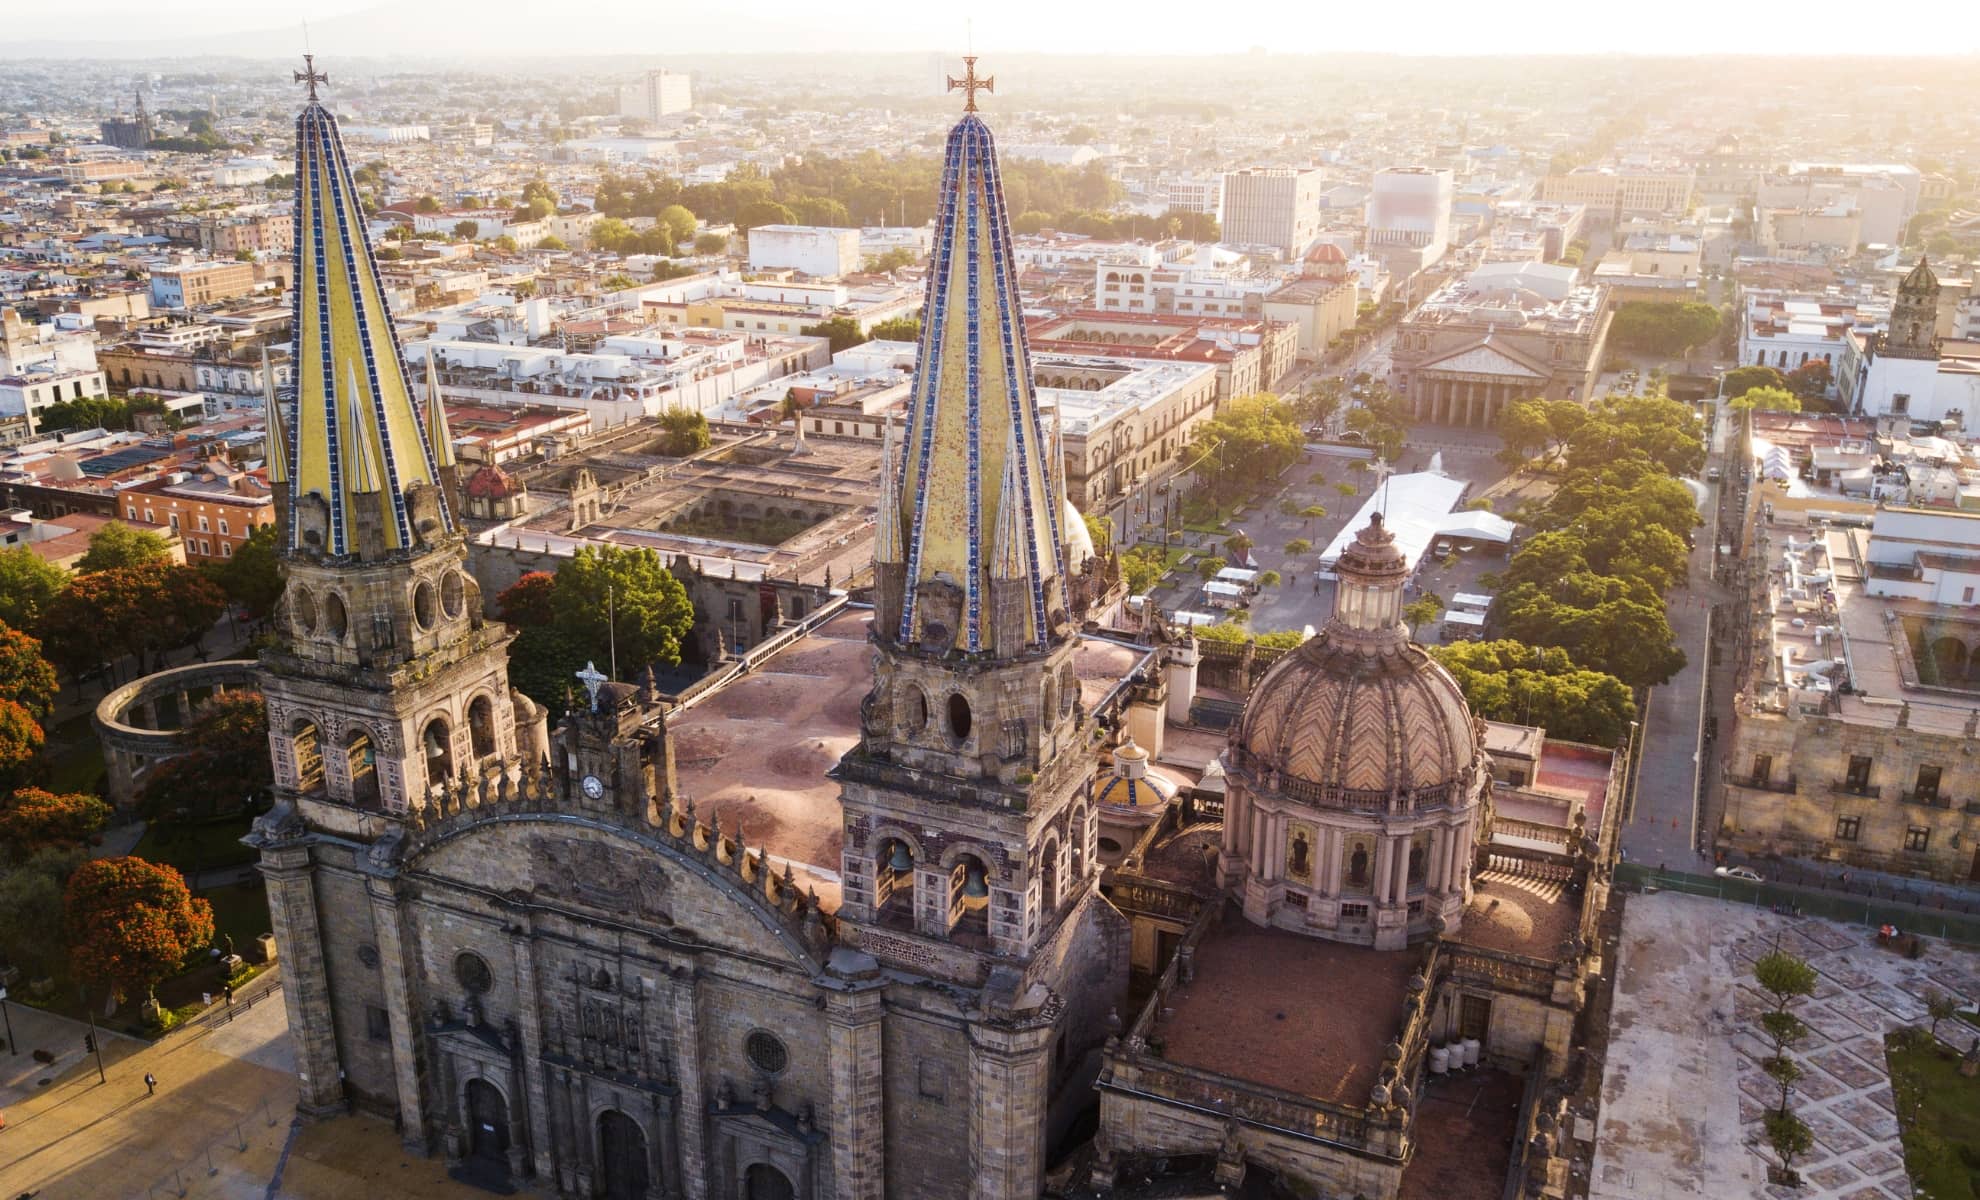 Guadalajara au Mexique